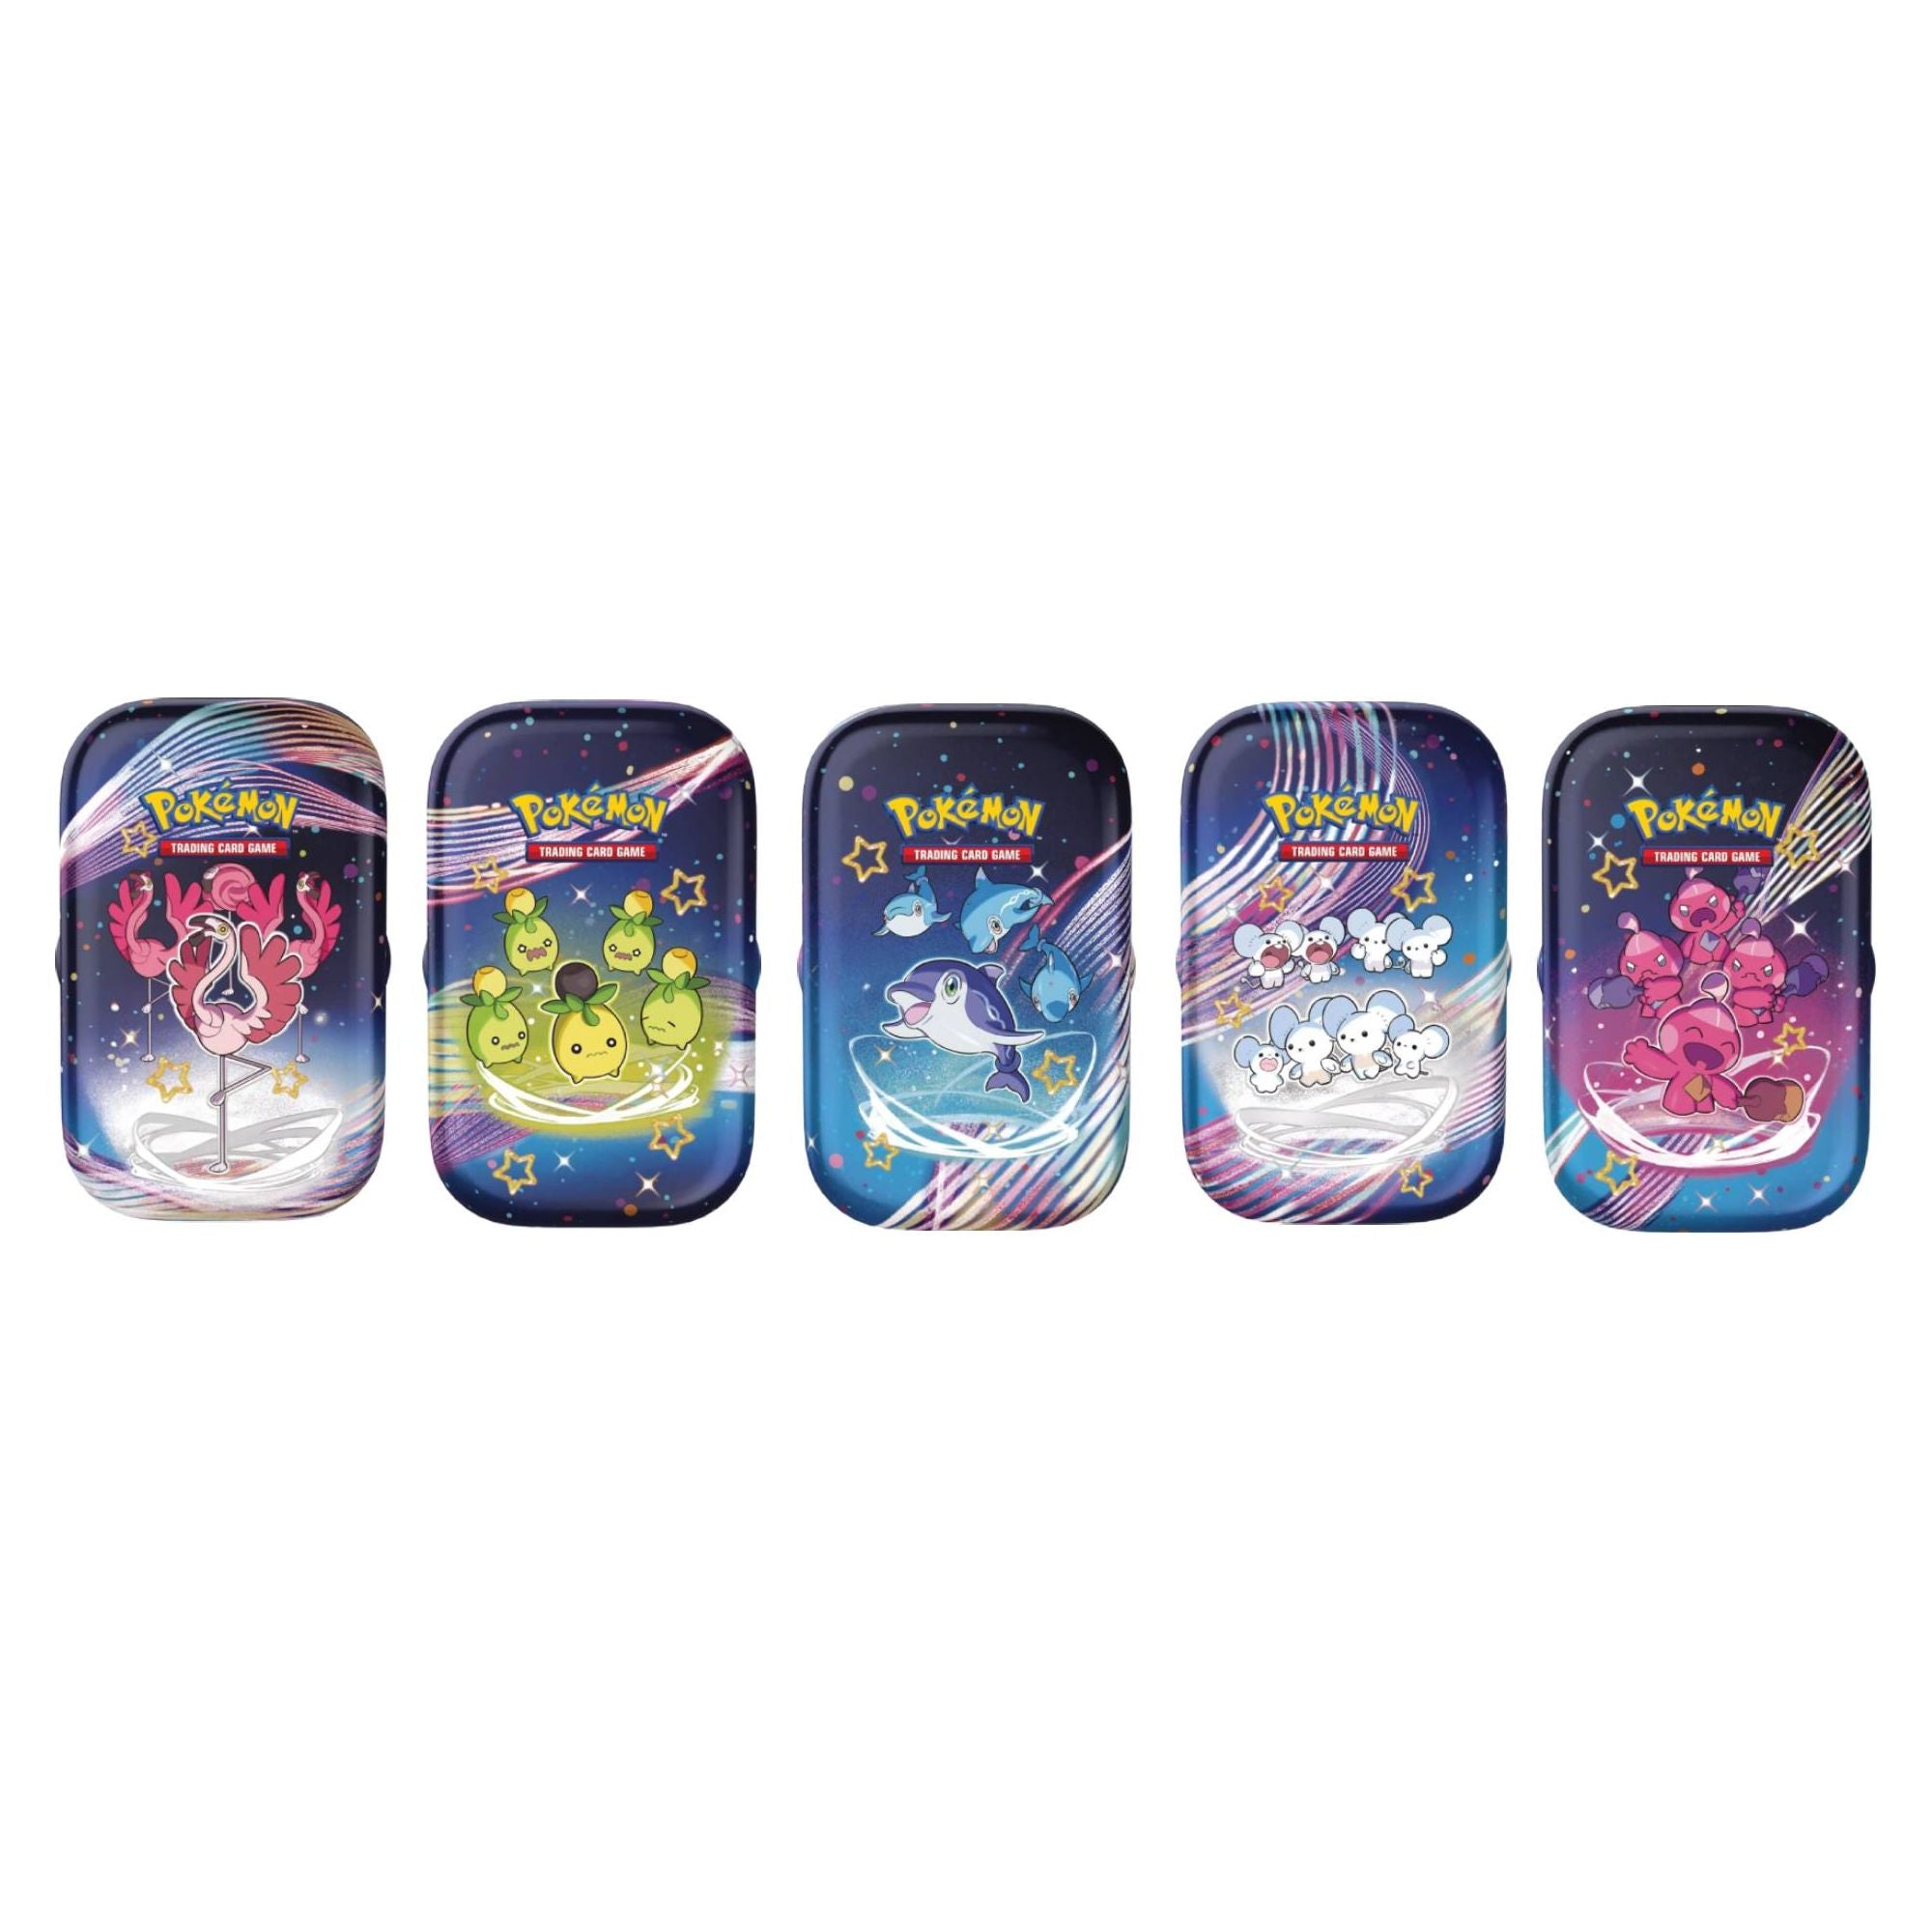 Pokémon TCG: Scarlet & Violet — Paldean Fates Mini Tin Display (10 Mini Tins)